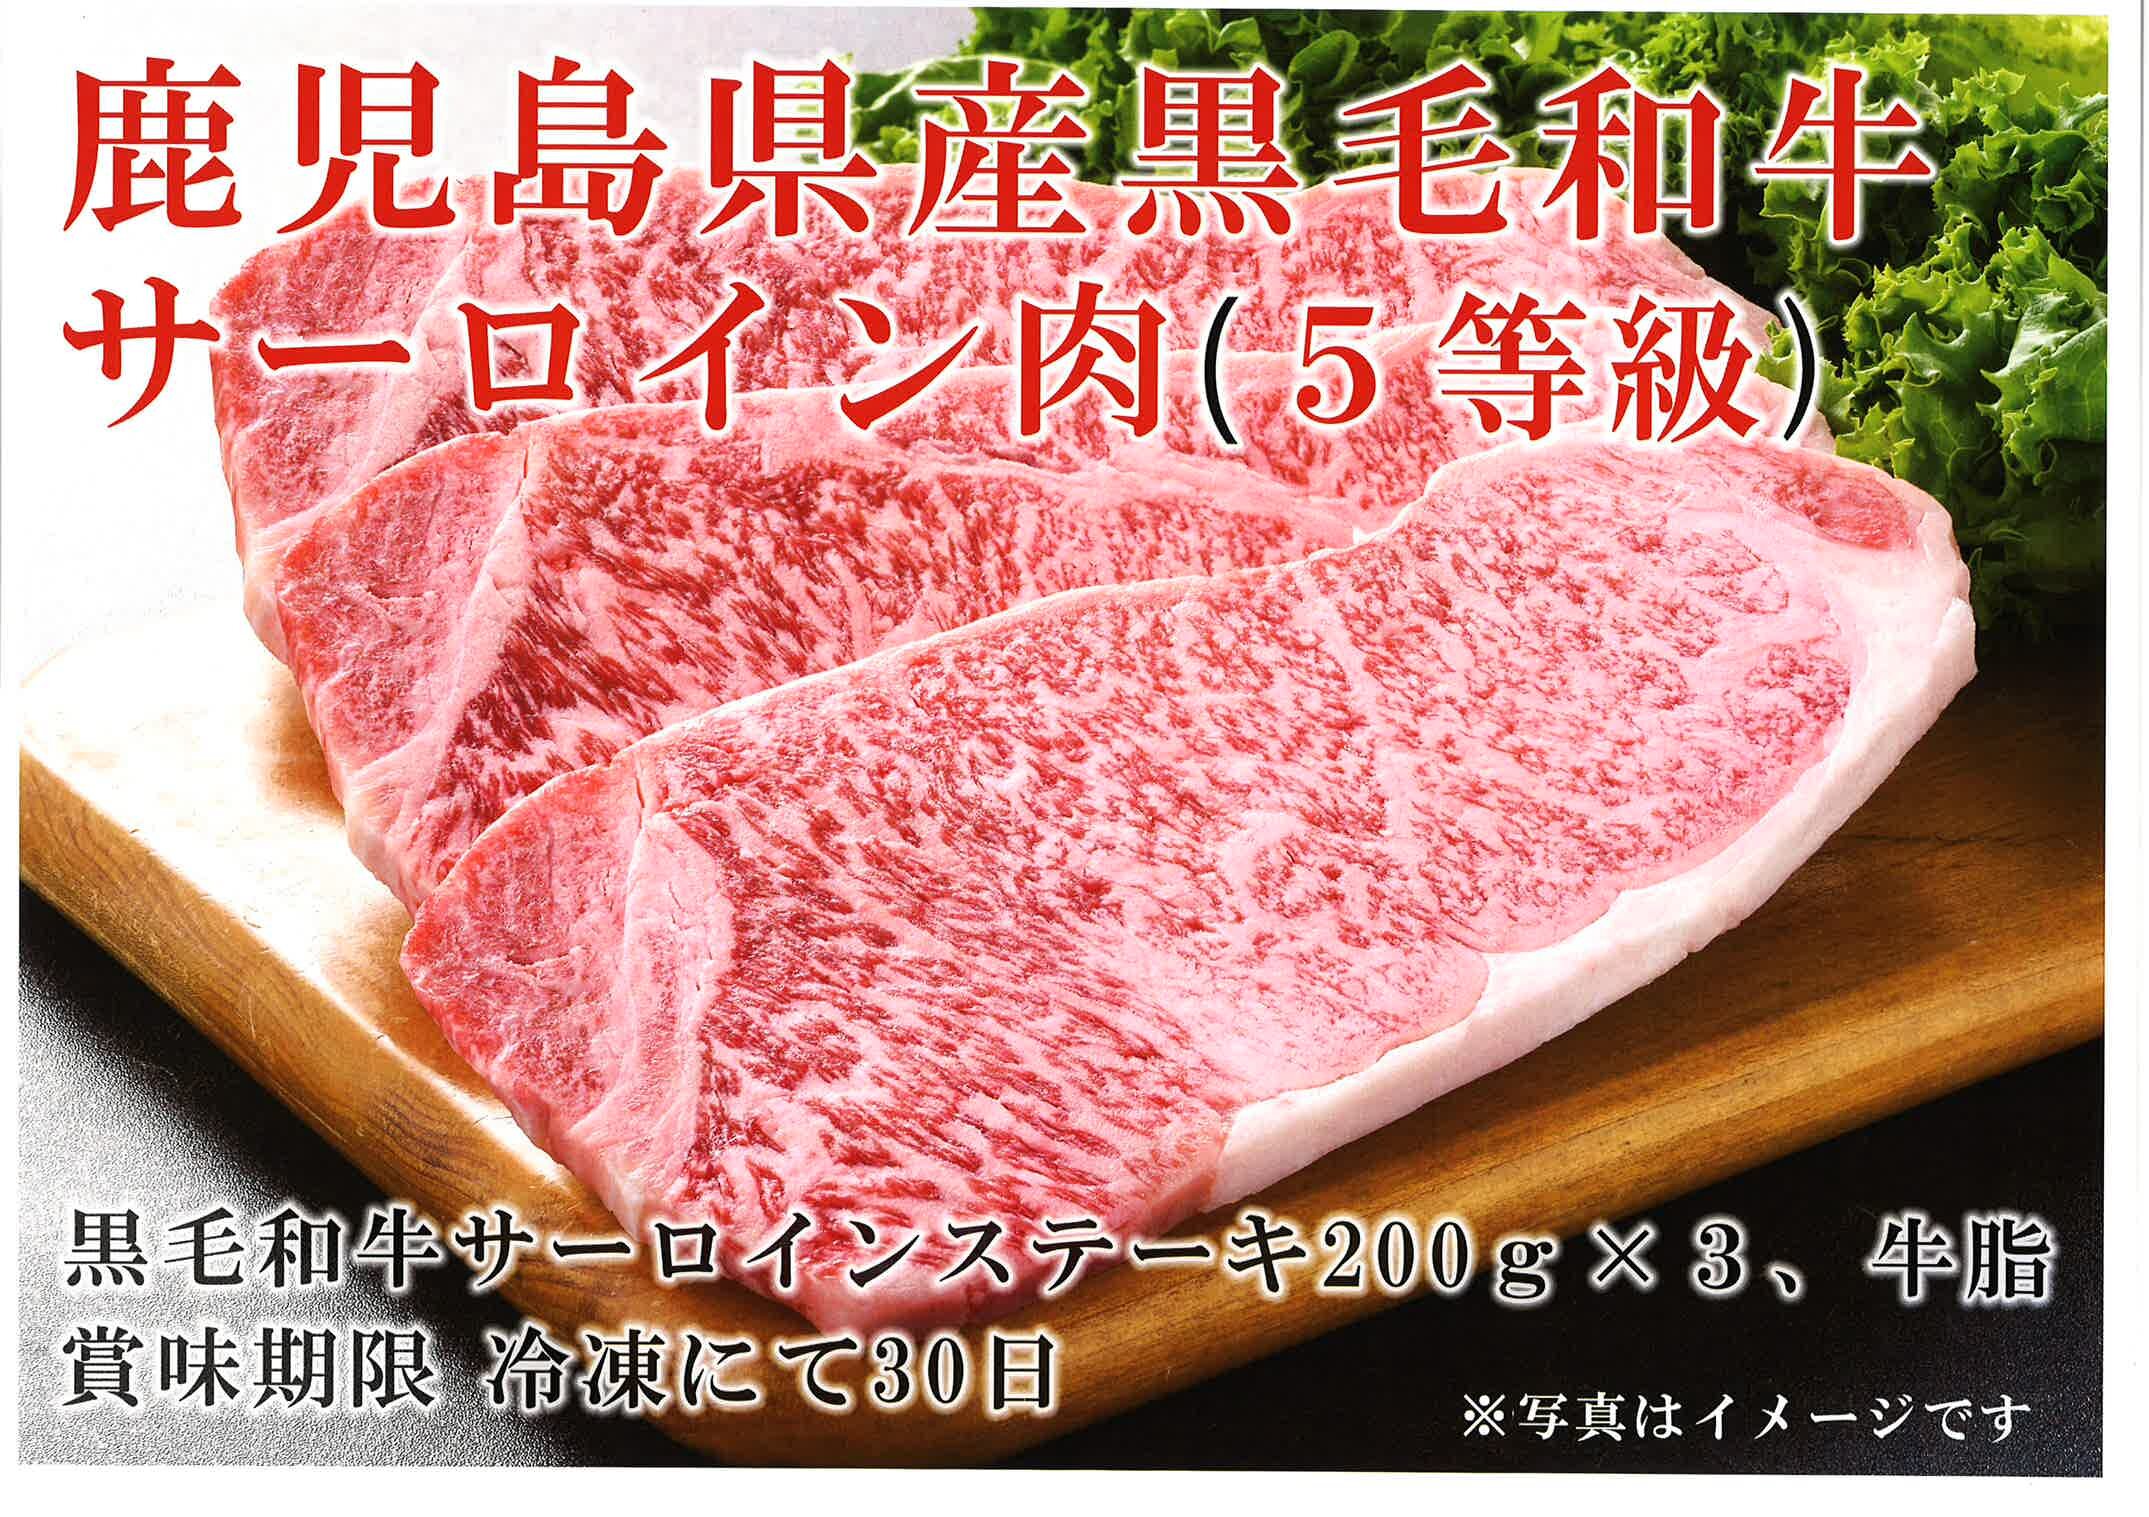 Japanese Black Wagyu Sirloin Steak 